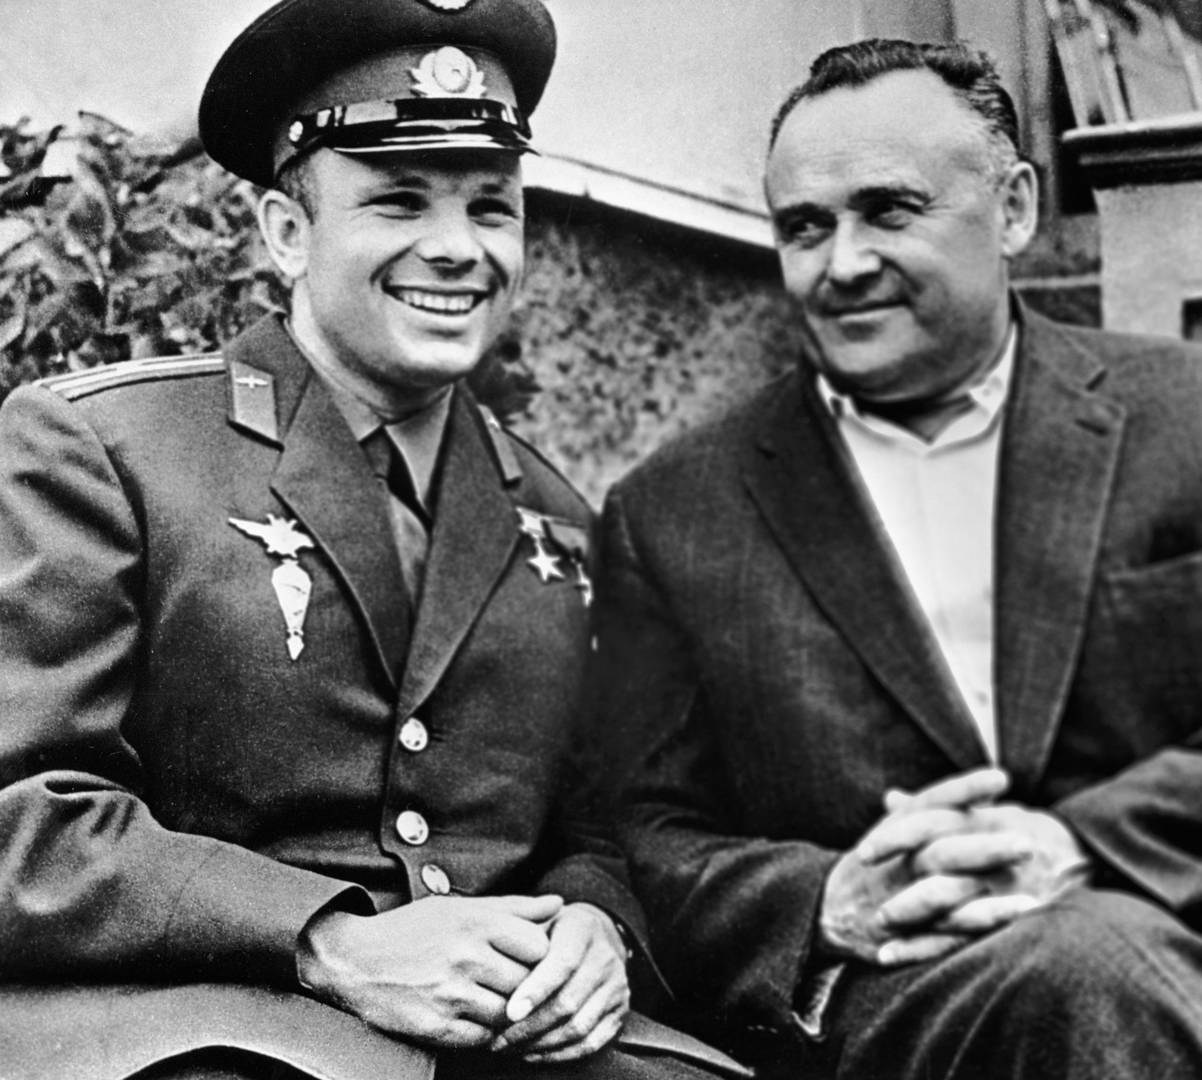 Гагарин и Королёв